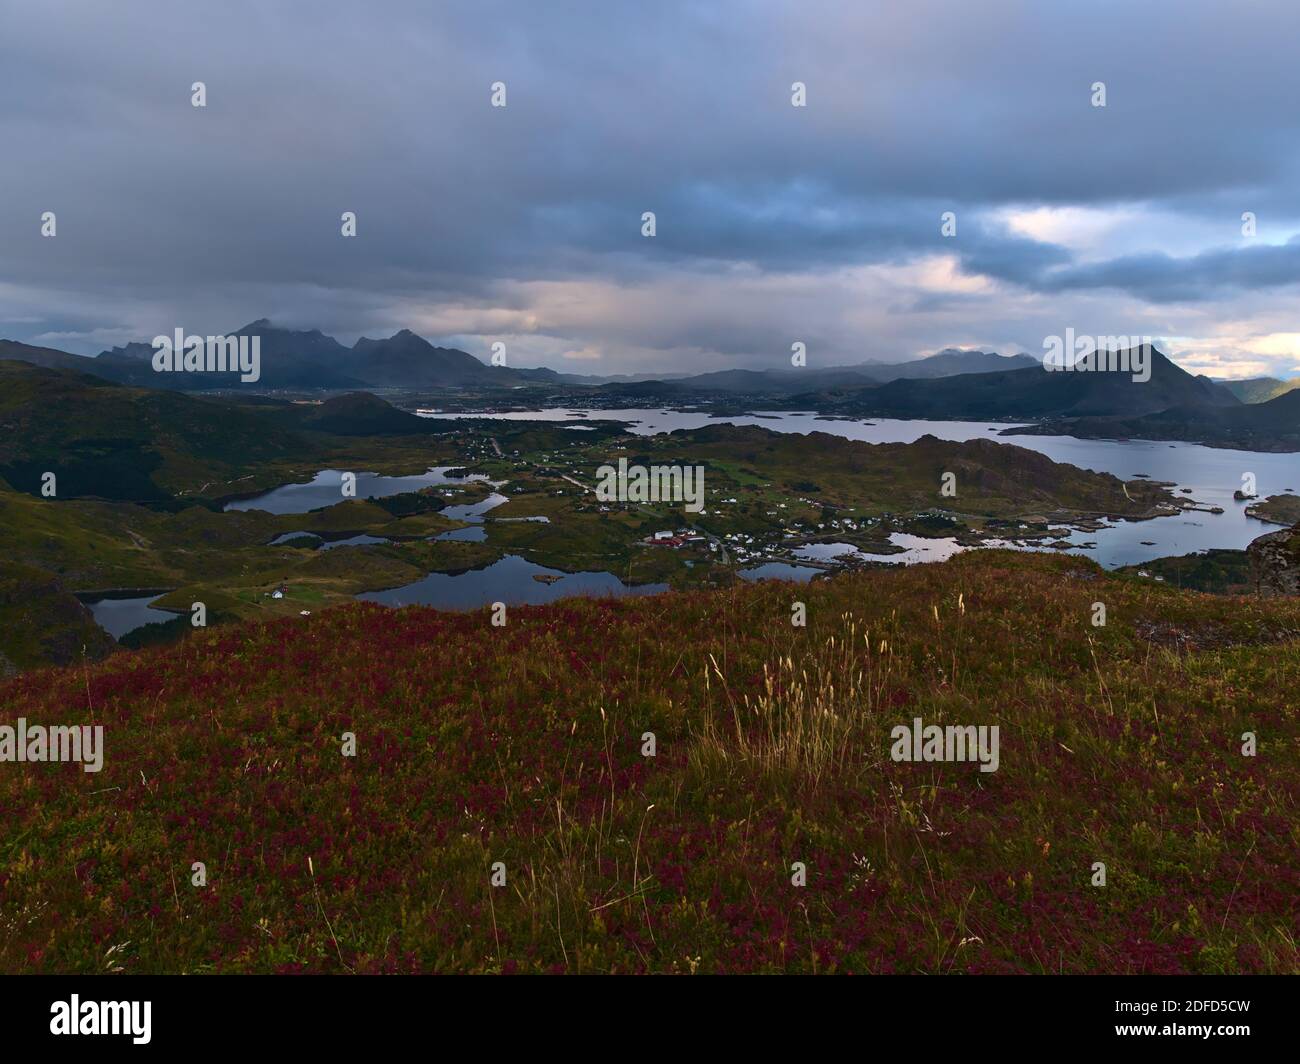 Belle vue panoramique sur l'ouest de l'île de Vestvågøya, Lofoten, Norvège avec fjord Buksnesfjorden, ville de Leknes, montagnes et prairie rugueuses. Banque D'Images